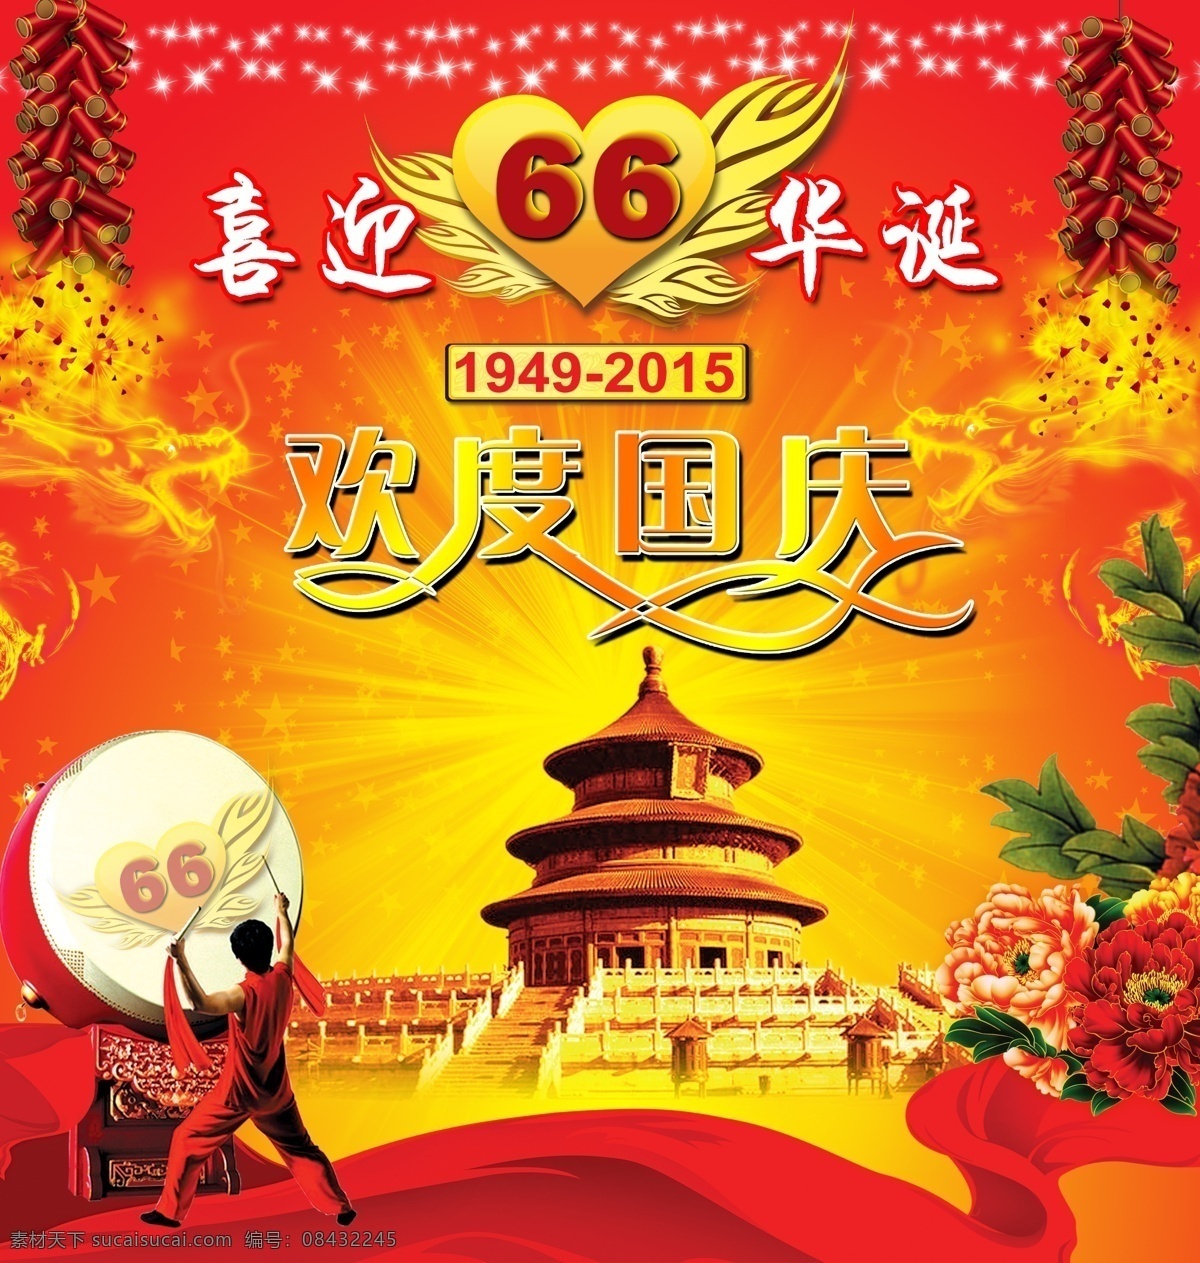 2015 国庆 周年 海报 66周年 背景 红色 欢度国庆